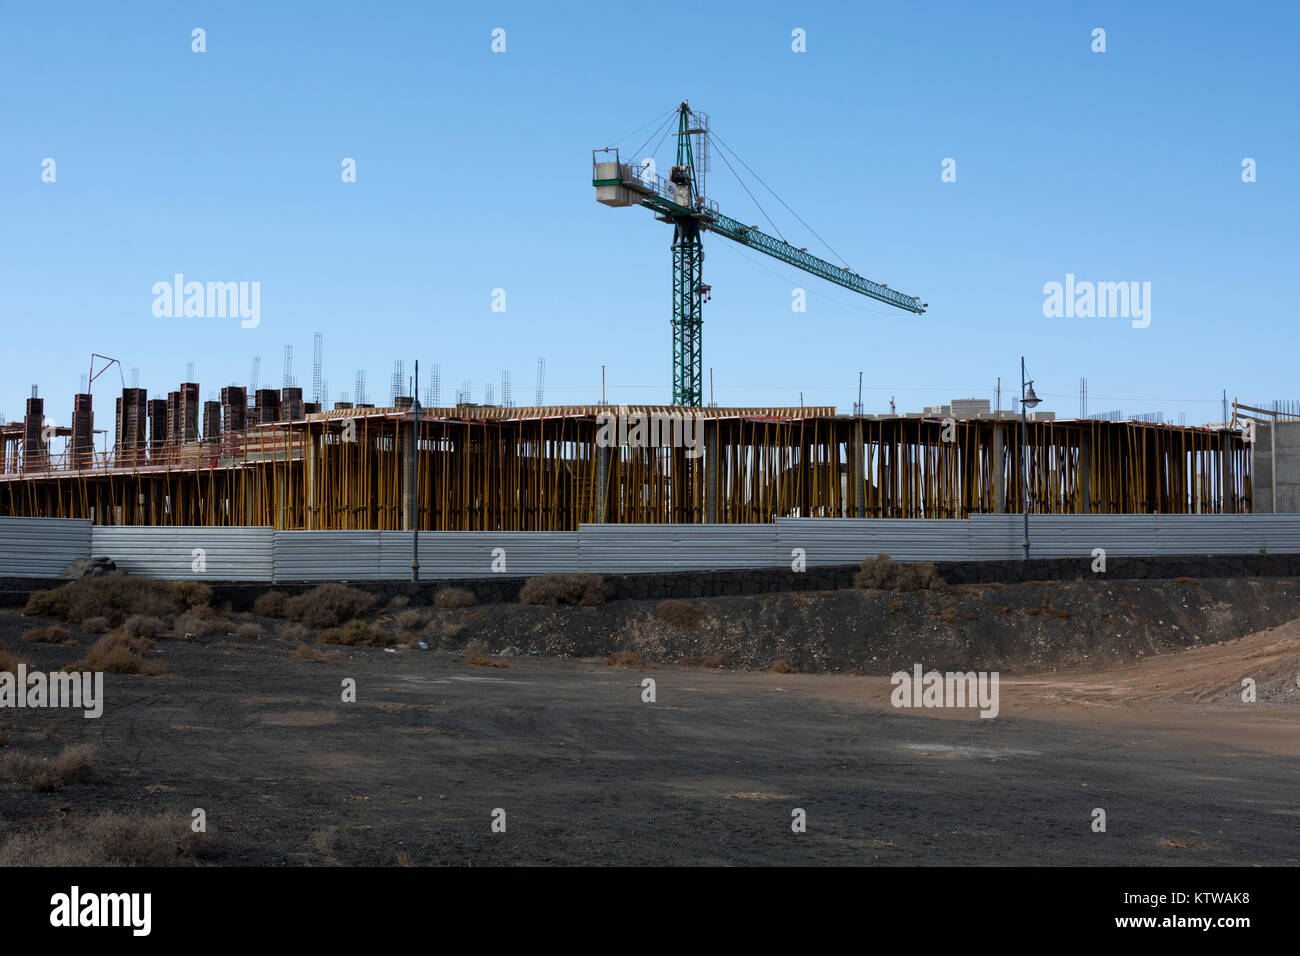 Building construction, Playa Blanca, Lanzarote, Canary Islands, Spain. Stock Photo